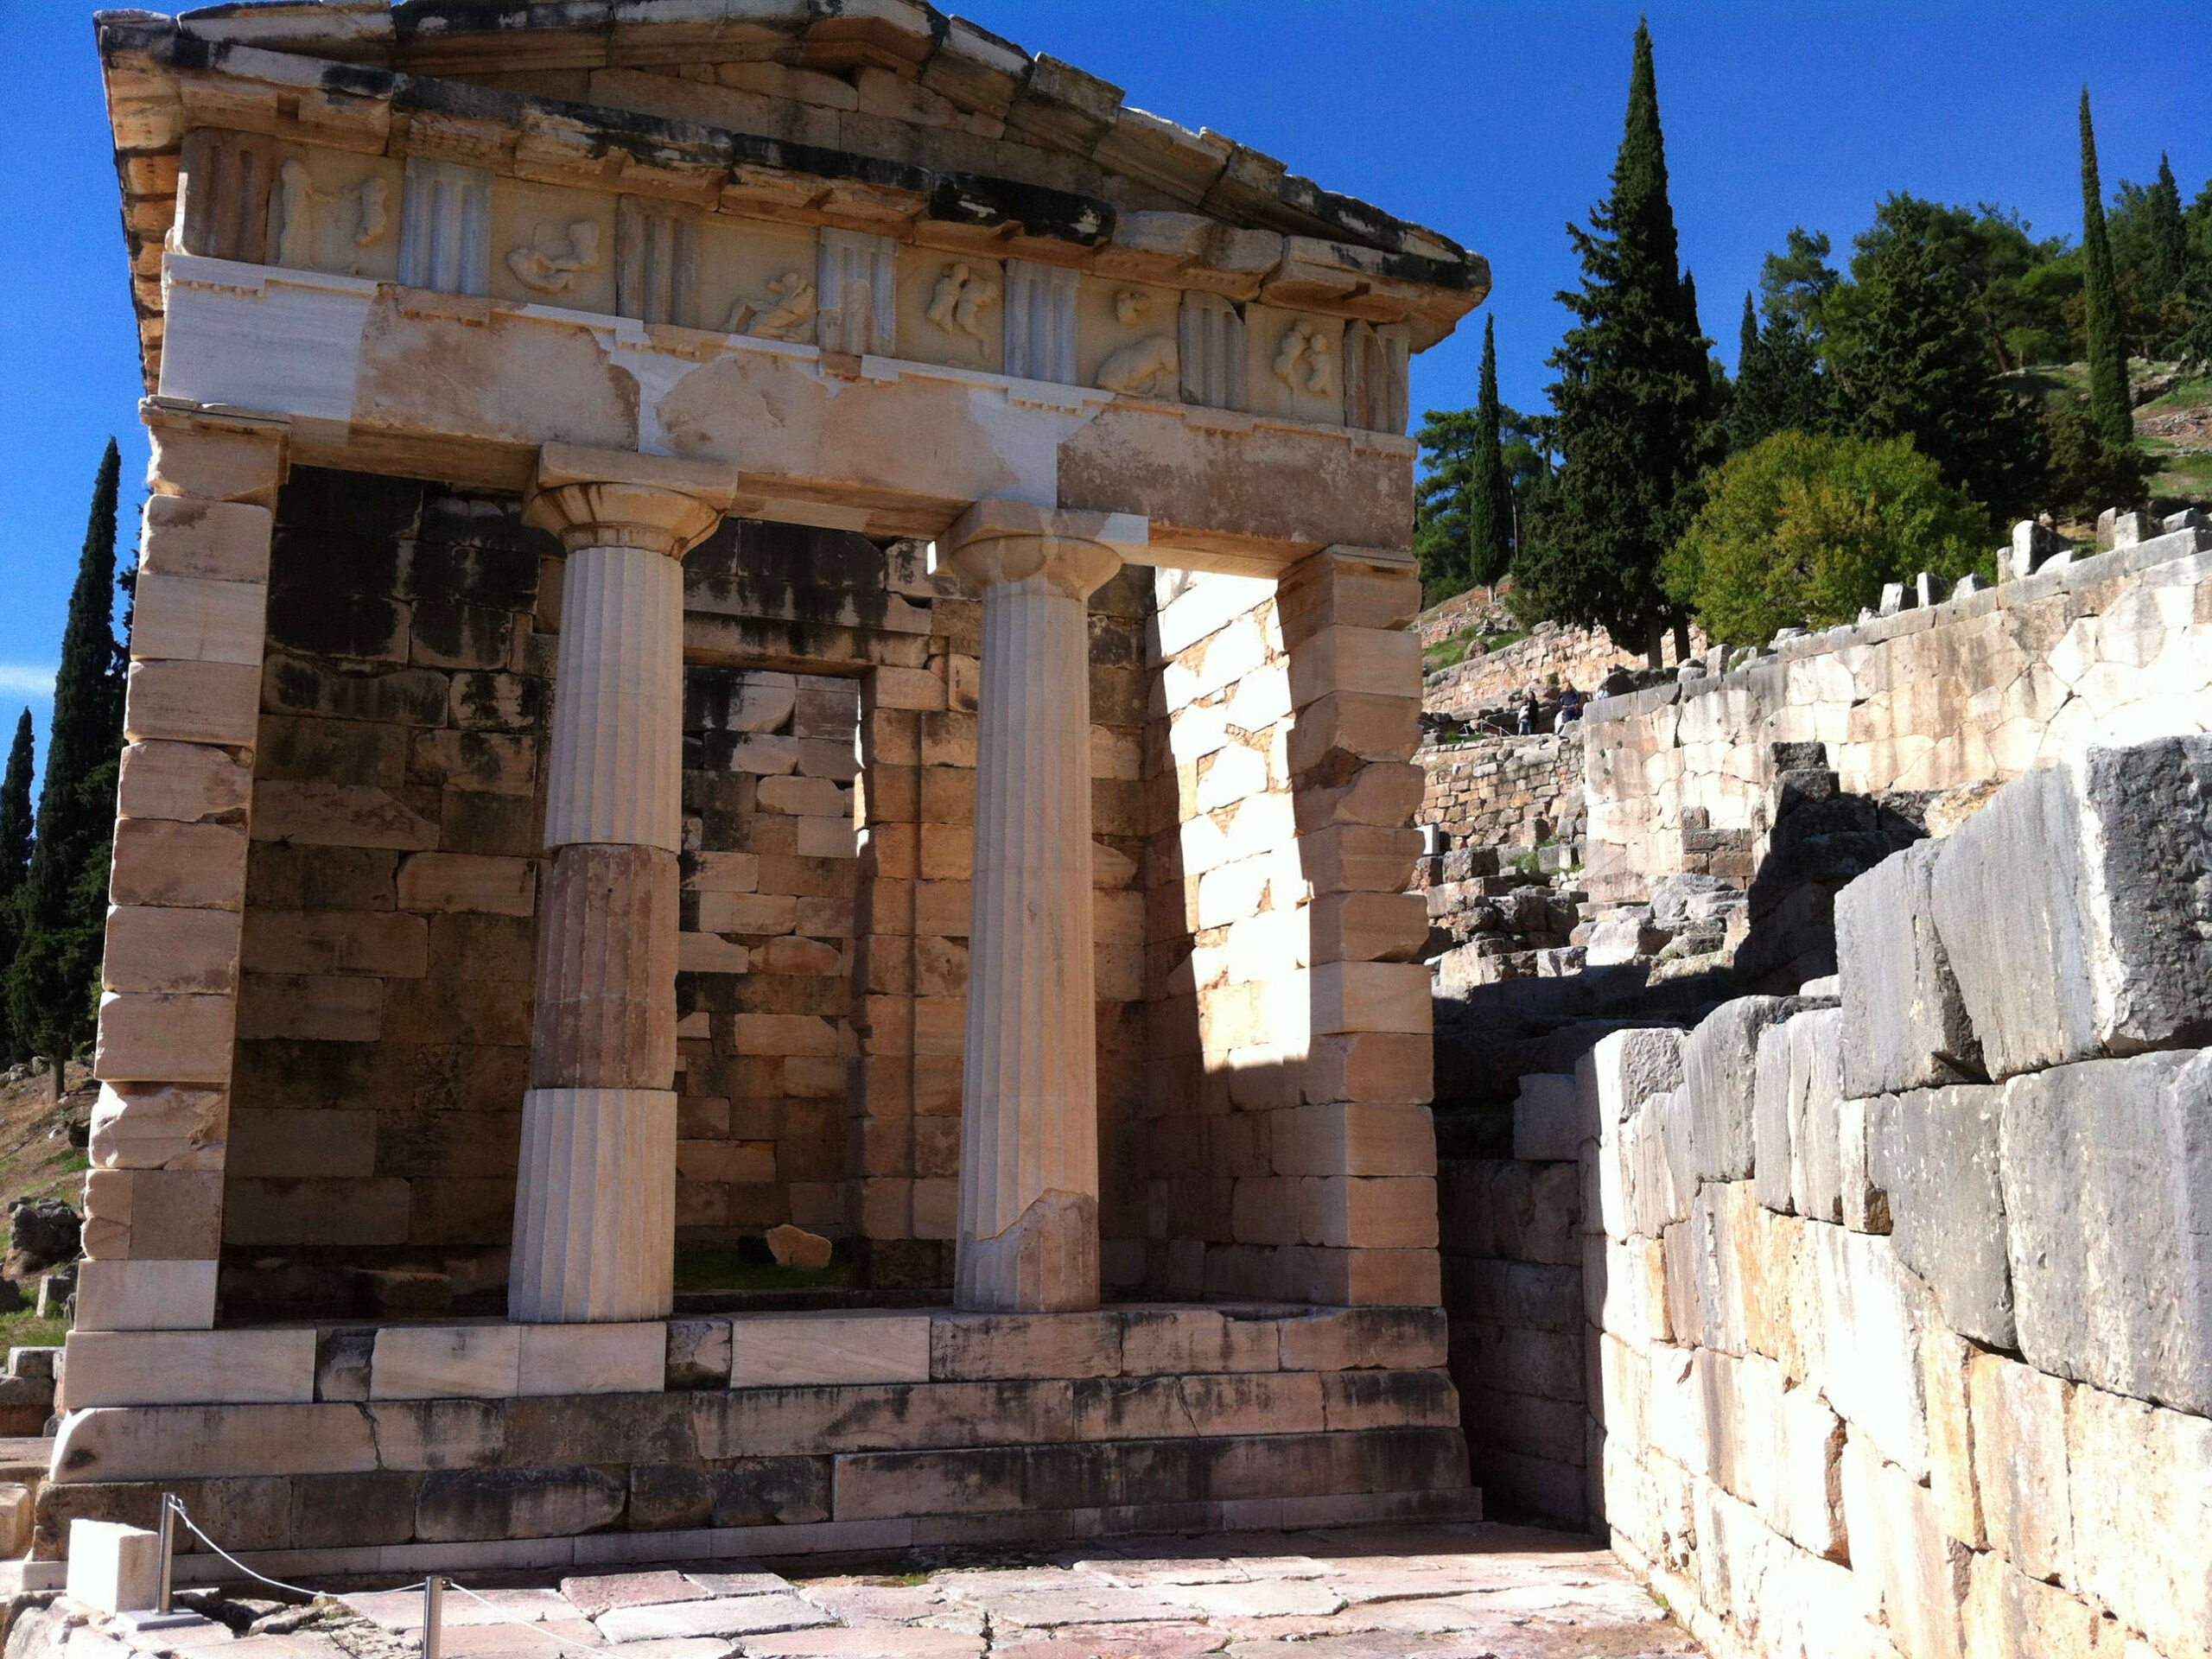 Temple of Apollo at Sounion